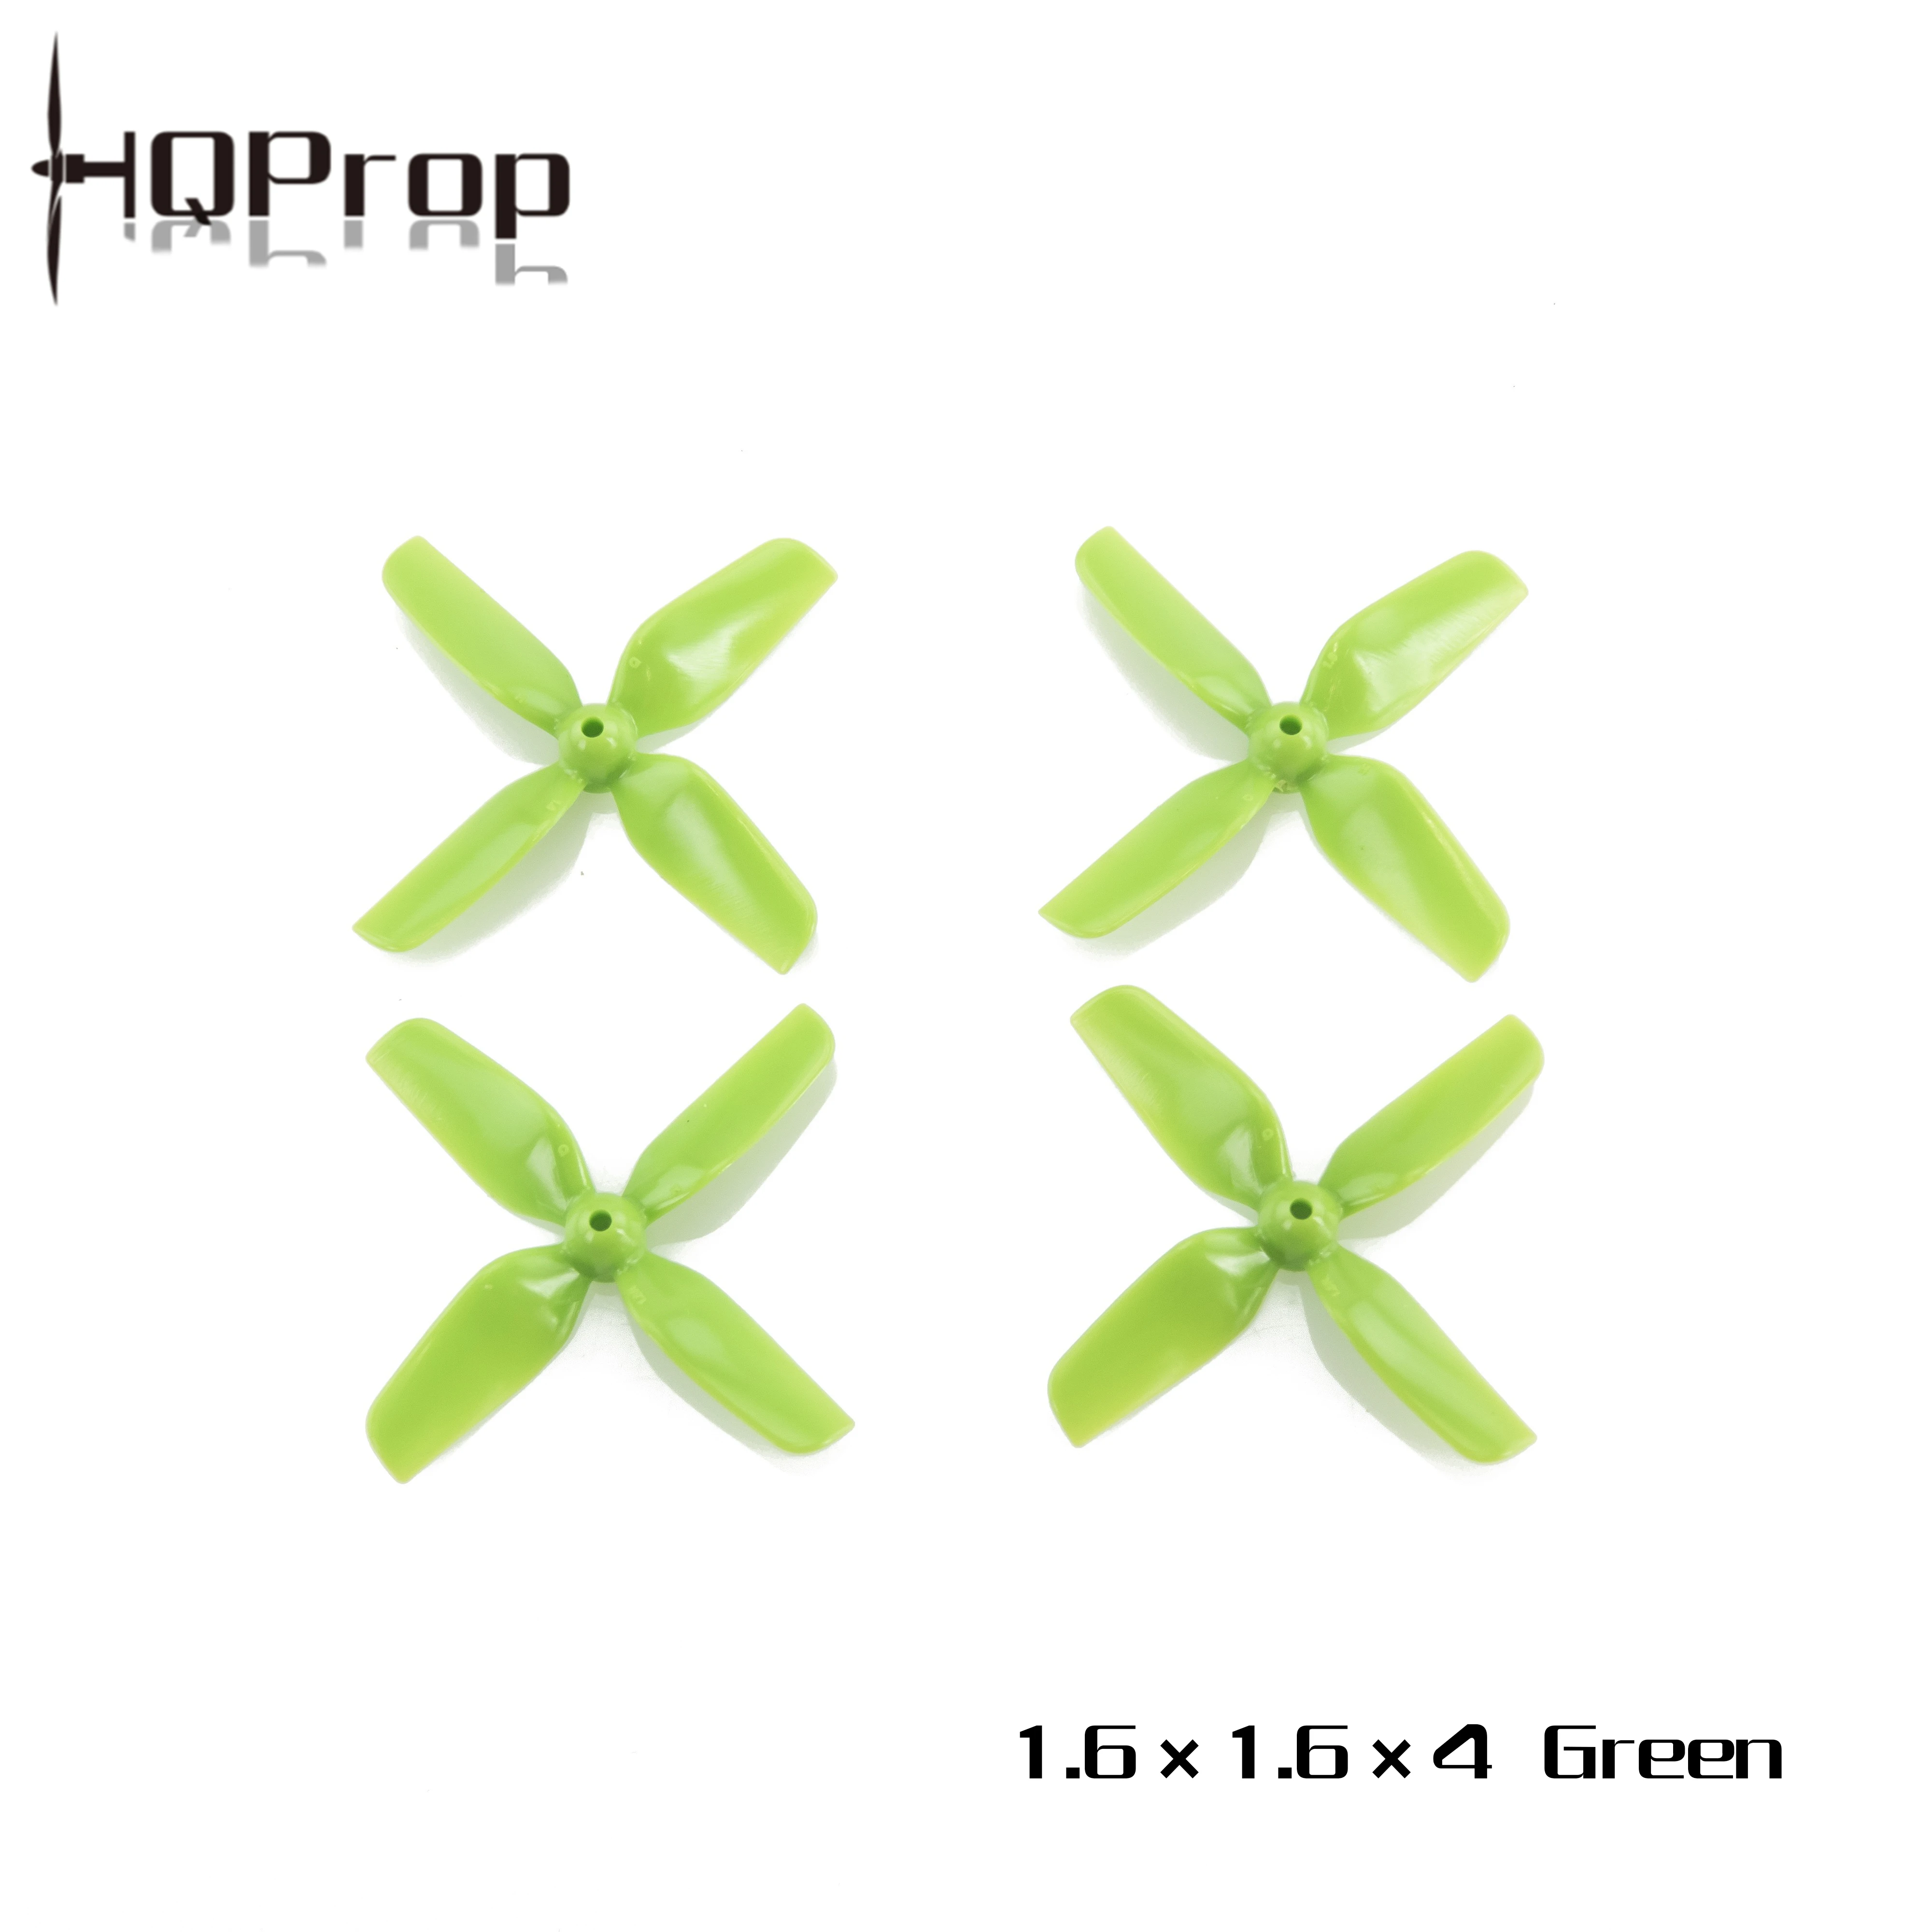 HQProp 40mm 1.6x1.6x4 Green 1mm propeller